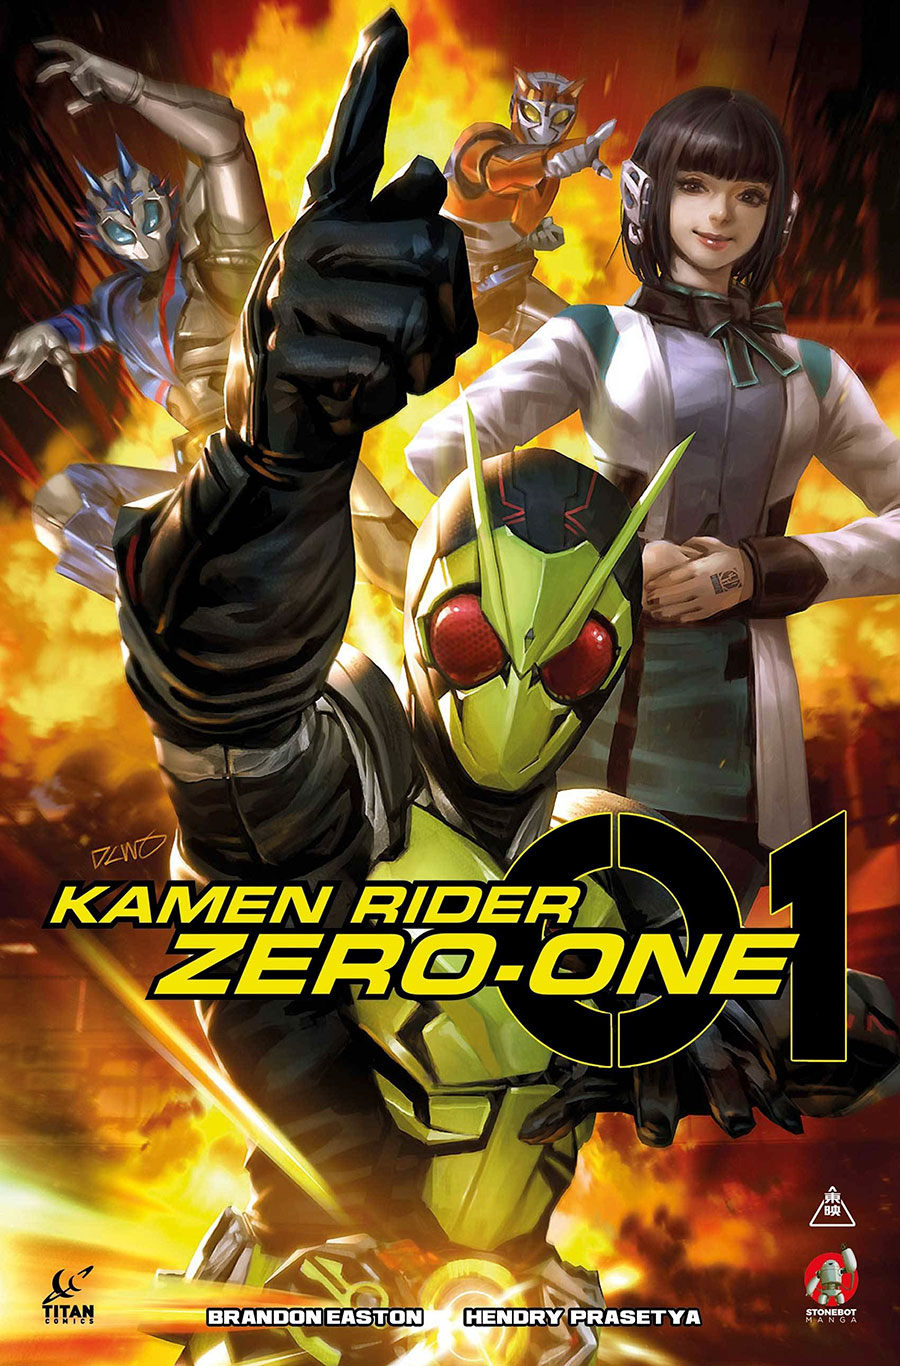 Kamen Rider Zero-One #1 Vol 1 GN